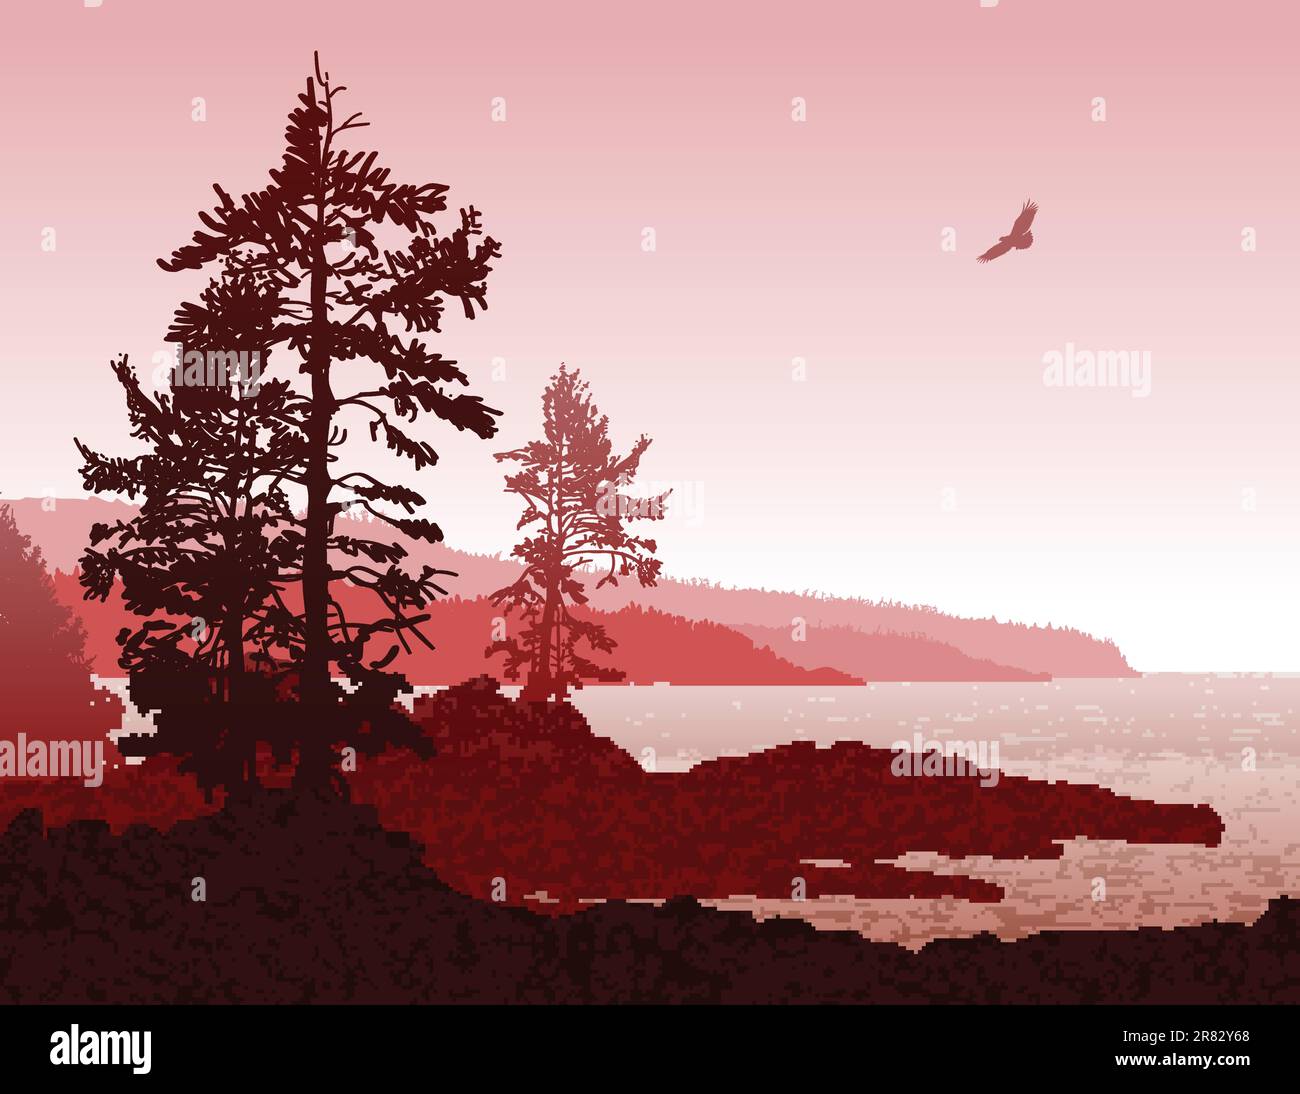 Illustration inspirante de la côte ouest accidentée de l'île de Vancouver Illustration de Vecteur